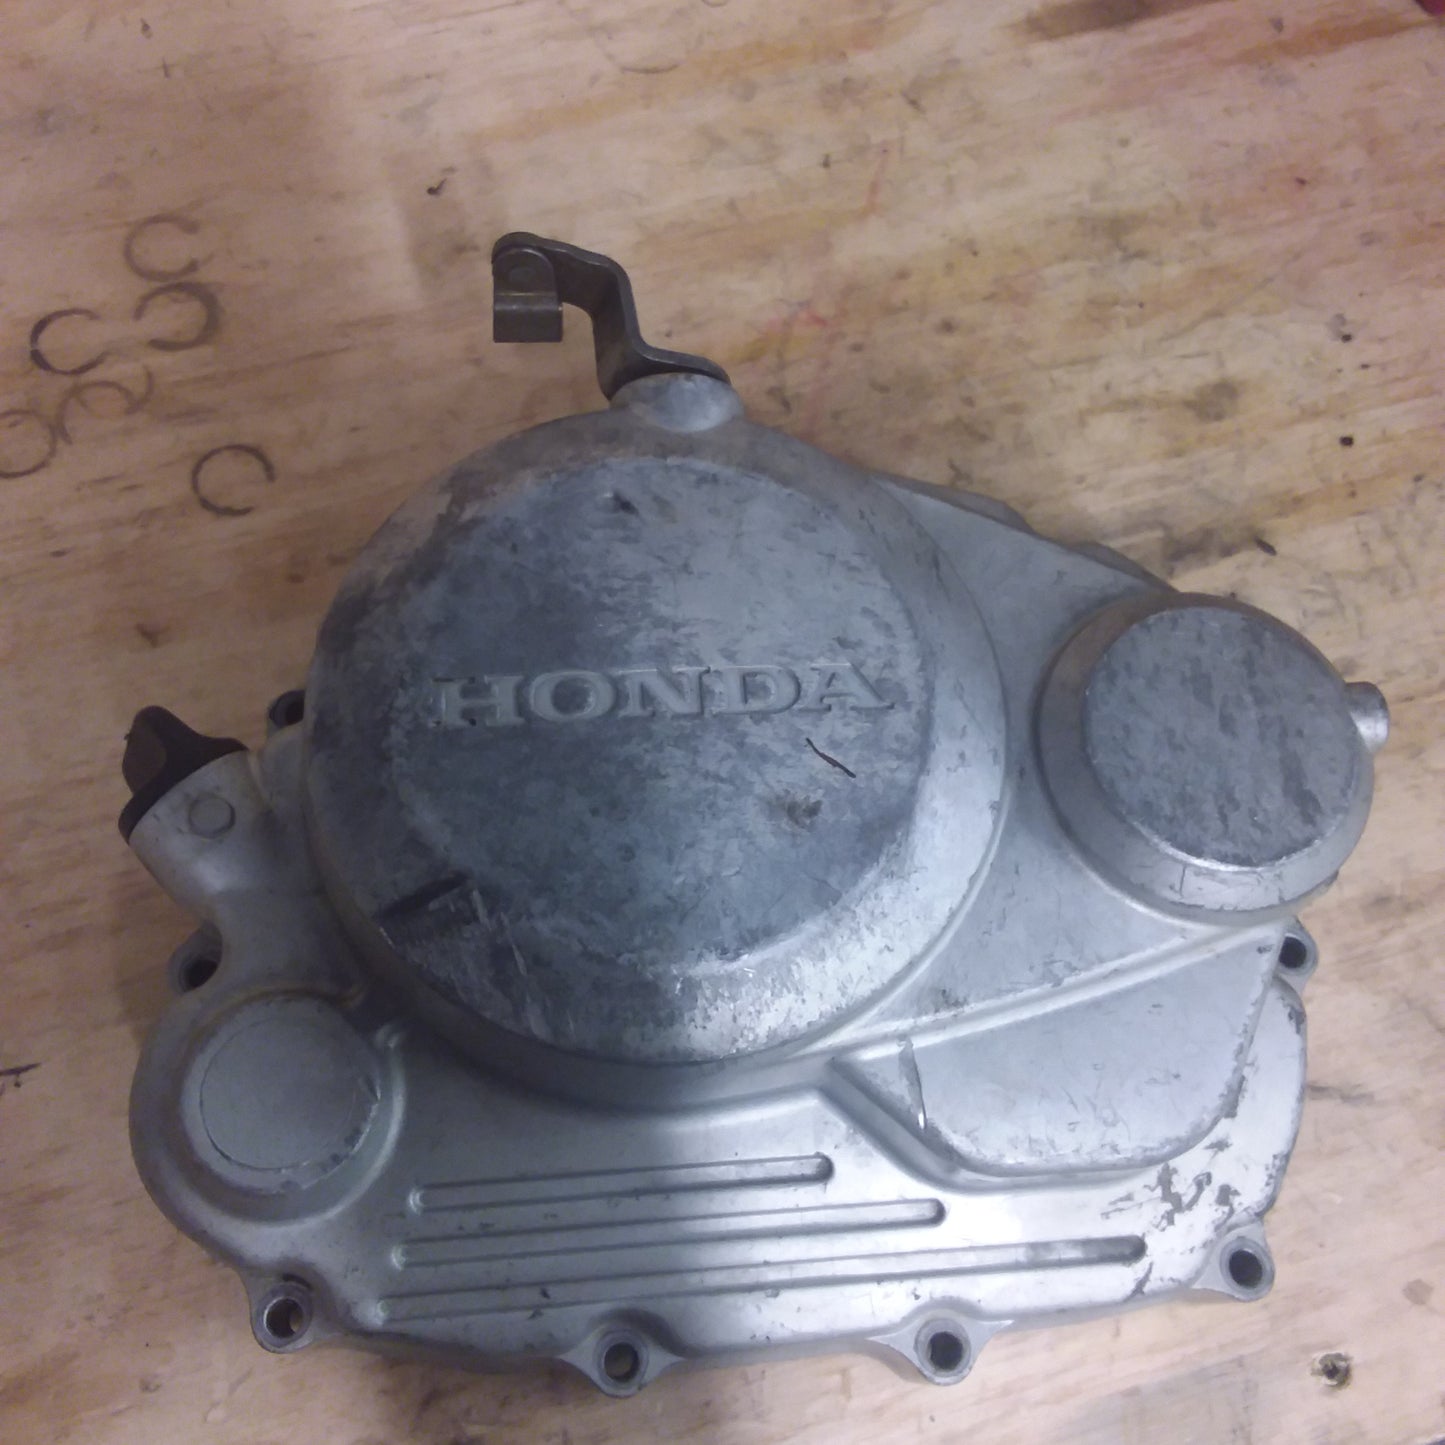 Honda CTX200 clutch cover